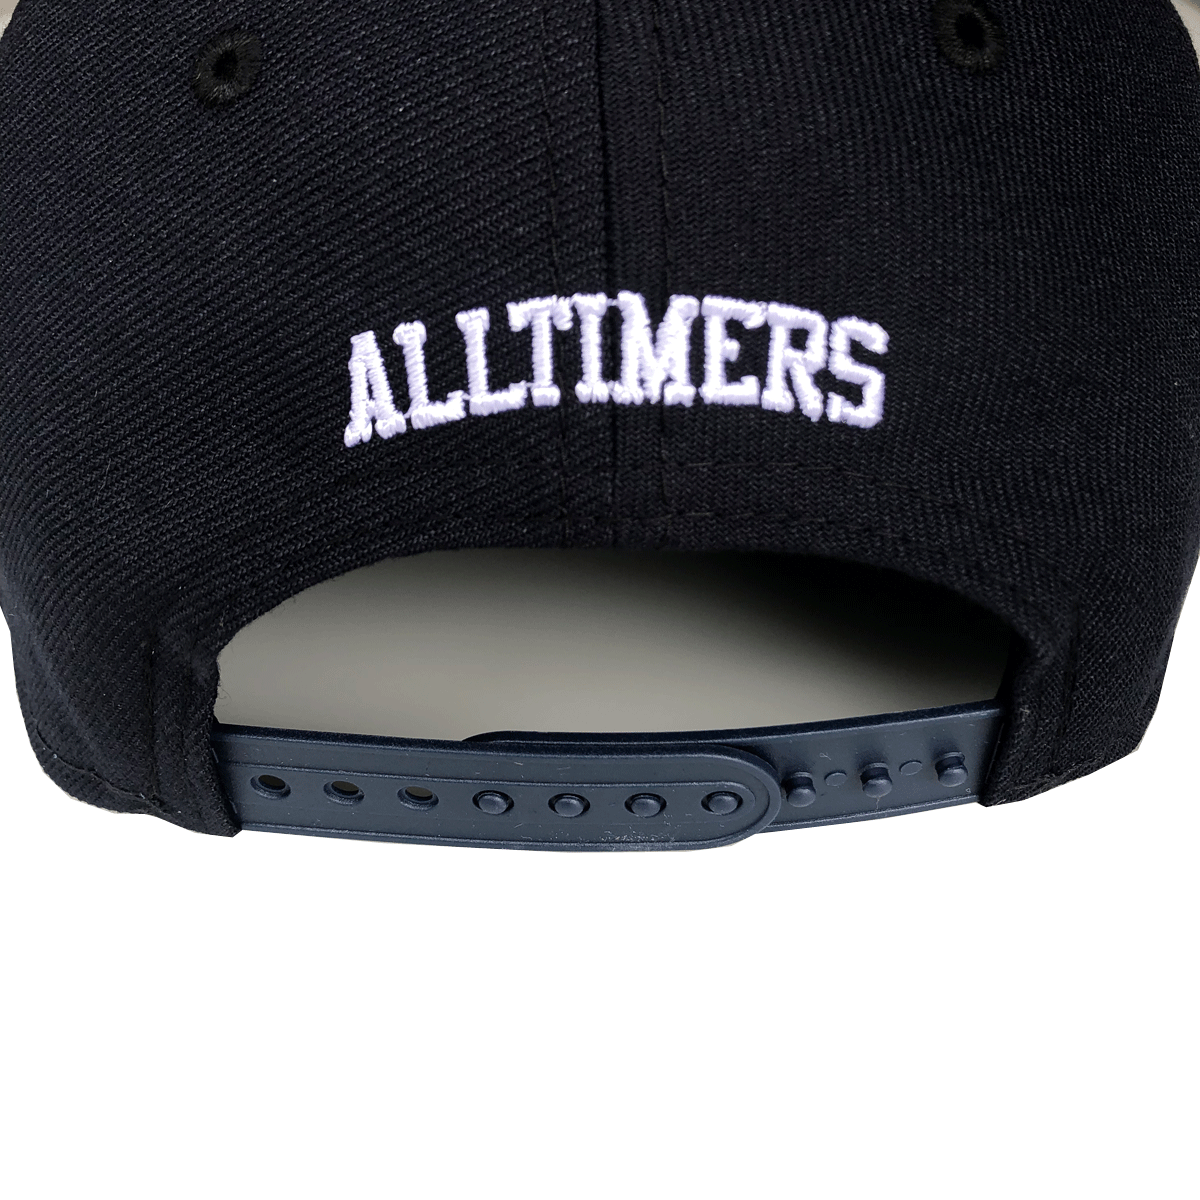 YANKEES ALLTIMERS NEW ERA CAP – Alltimers